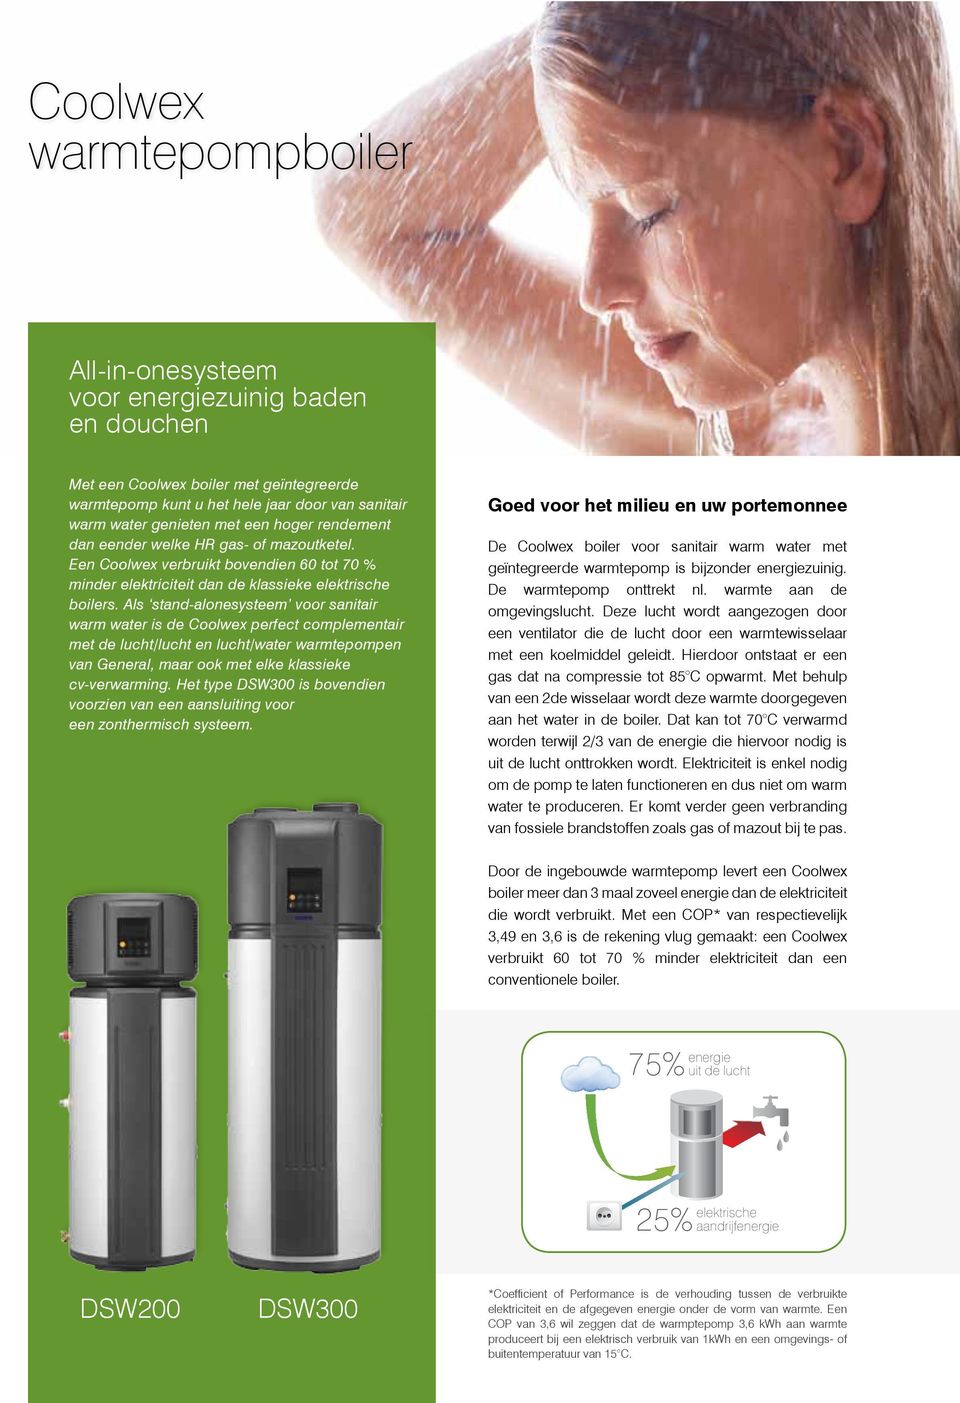 Als stand-alonesysteem voor sanitair warm water is de Coolwex perfect complementair met de lucht/lucht en lucht/water warmtepompen van General, maar ook met elke klassieke cv-verwarming.